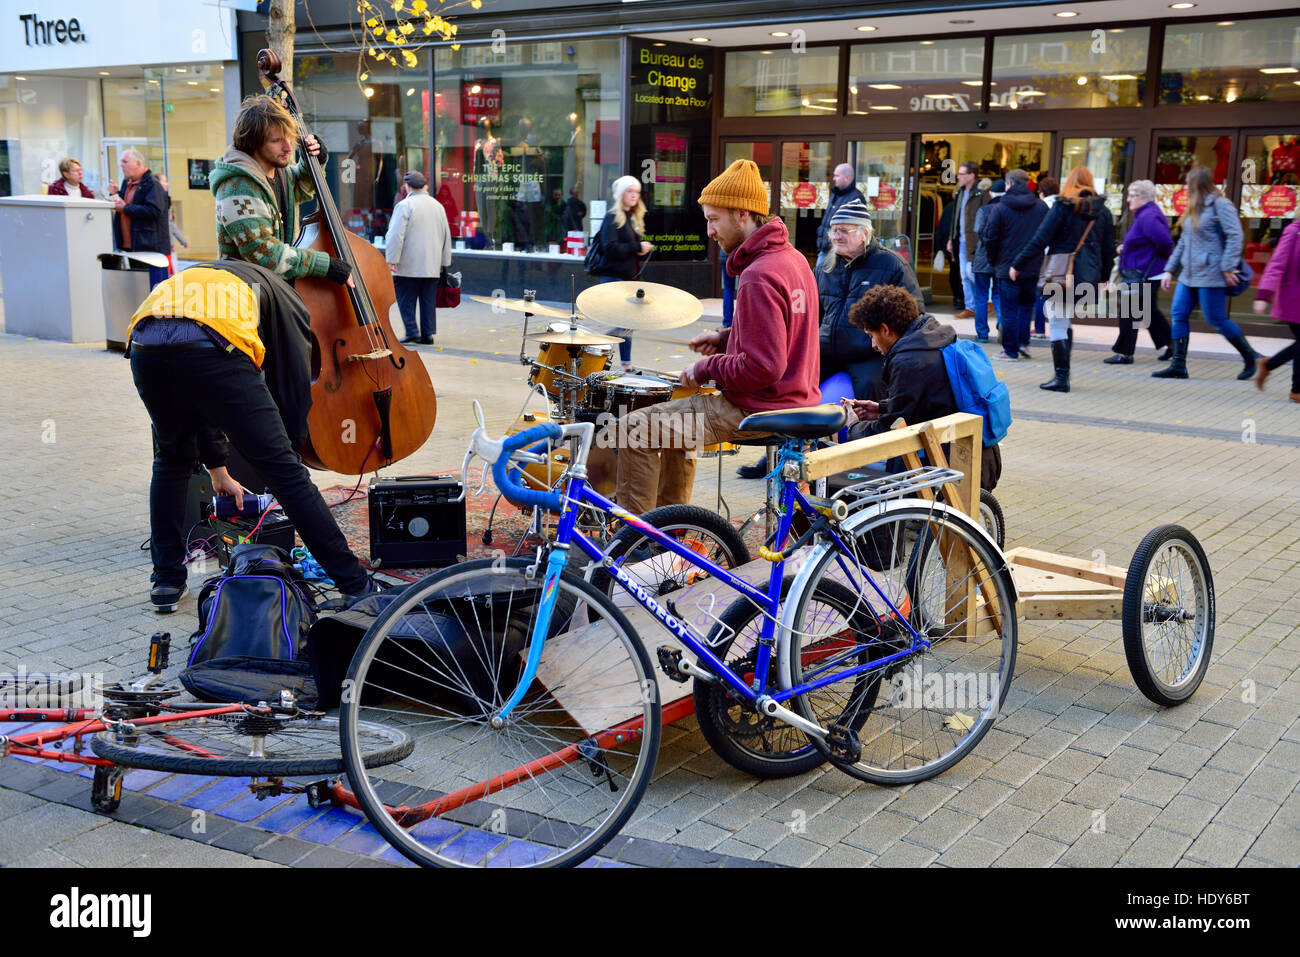 La mise en place du groupe de la rue avec la musique classique, Broadmead, Bristol, UK Banque D'Images